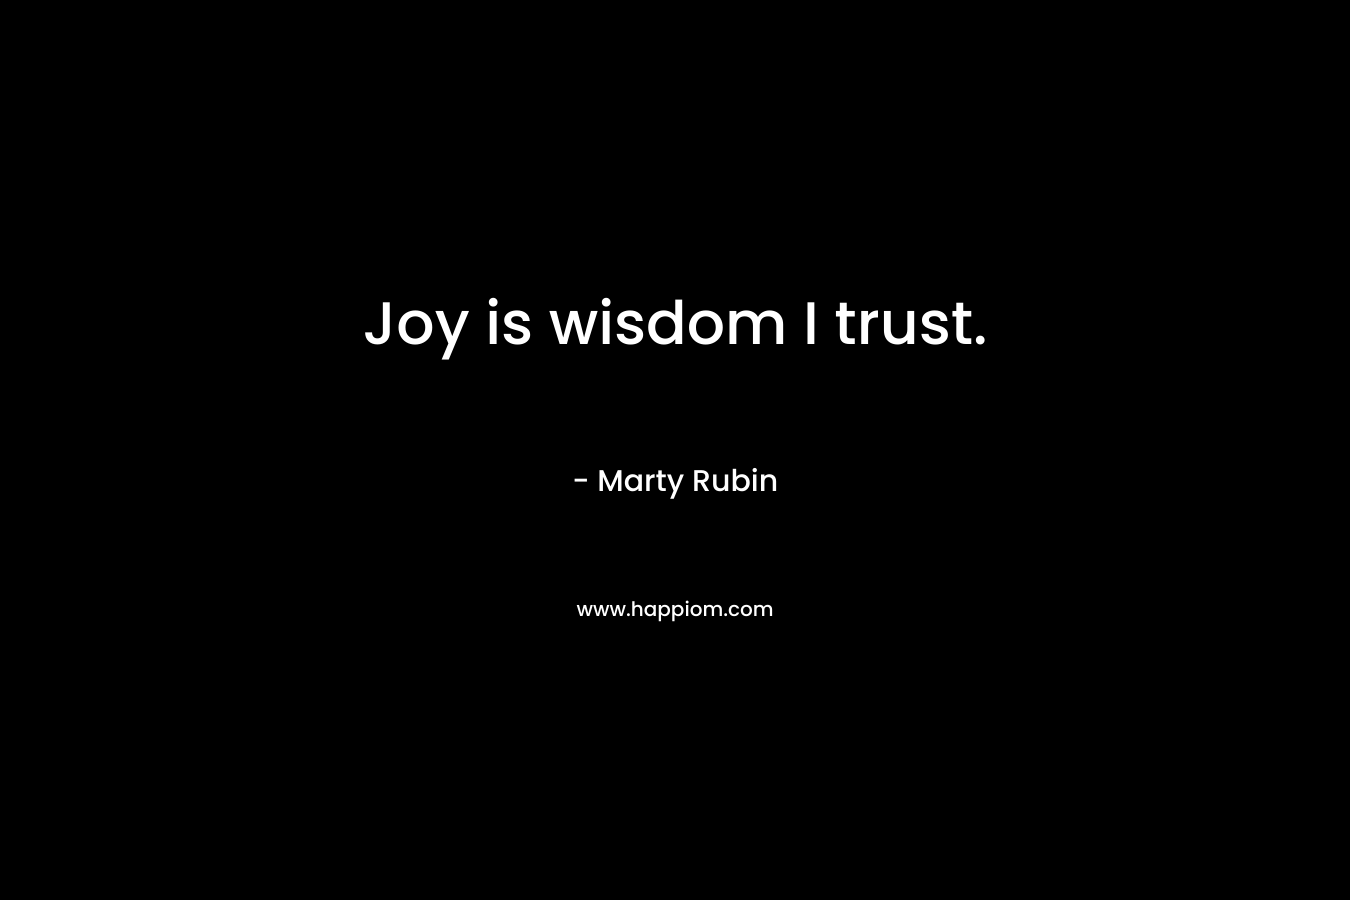 Joy is wisdom I trust.